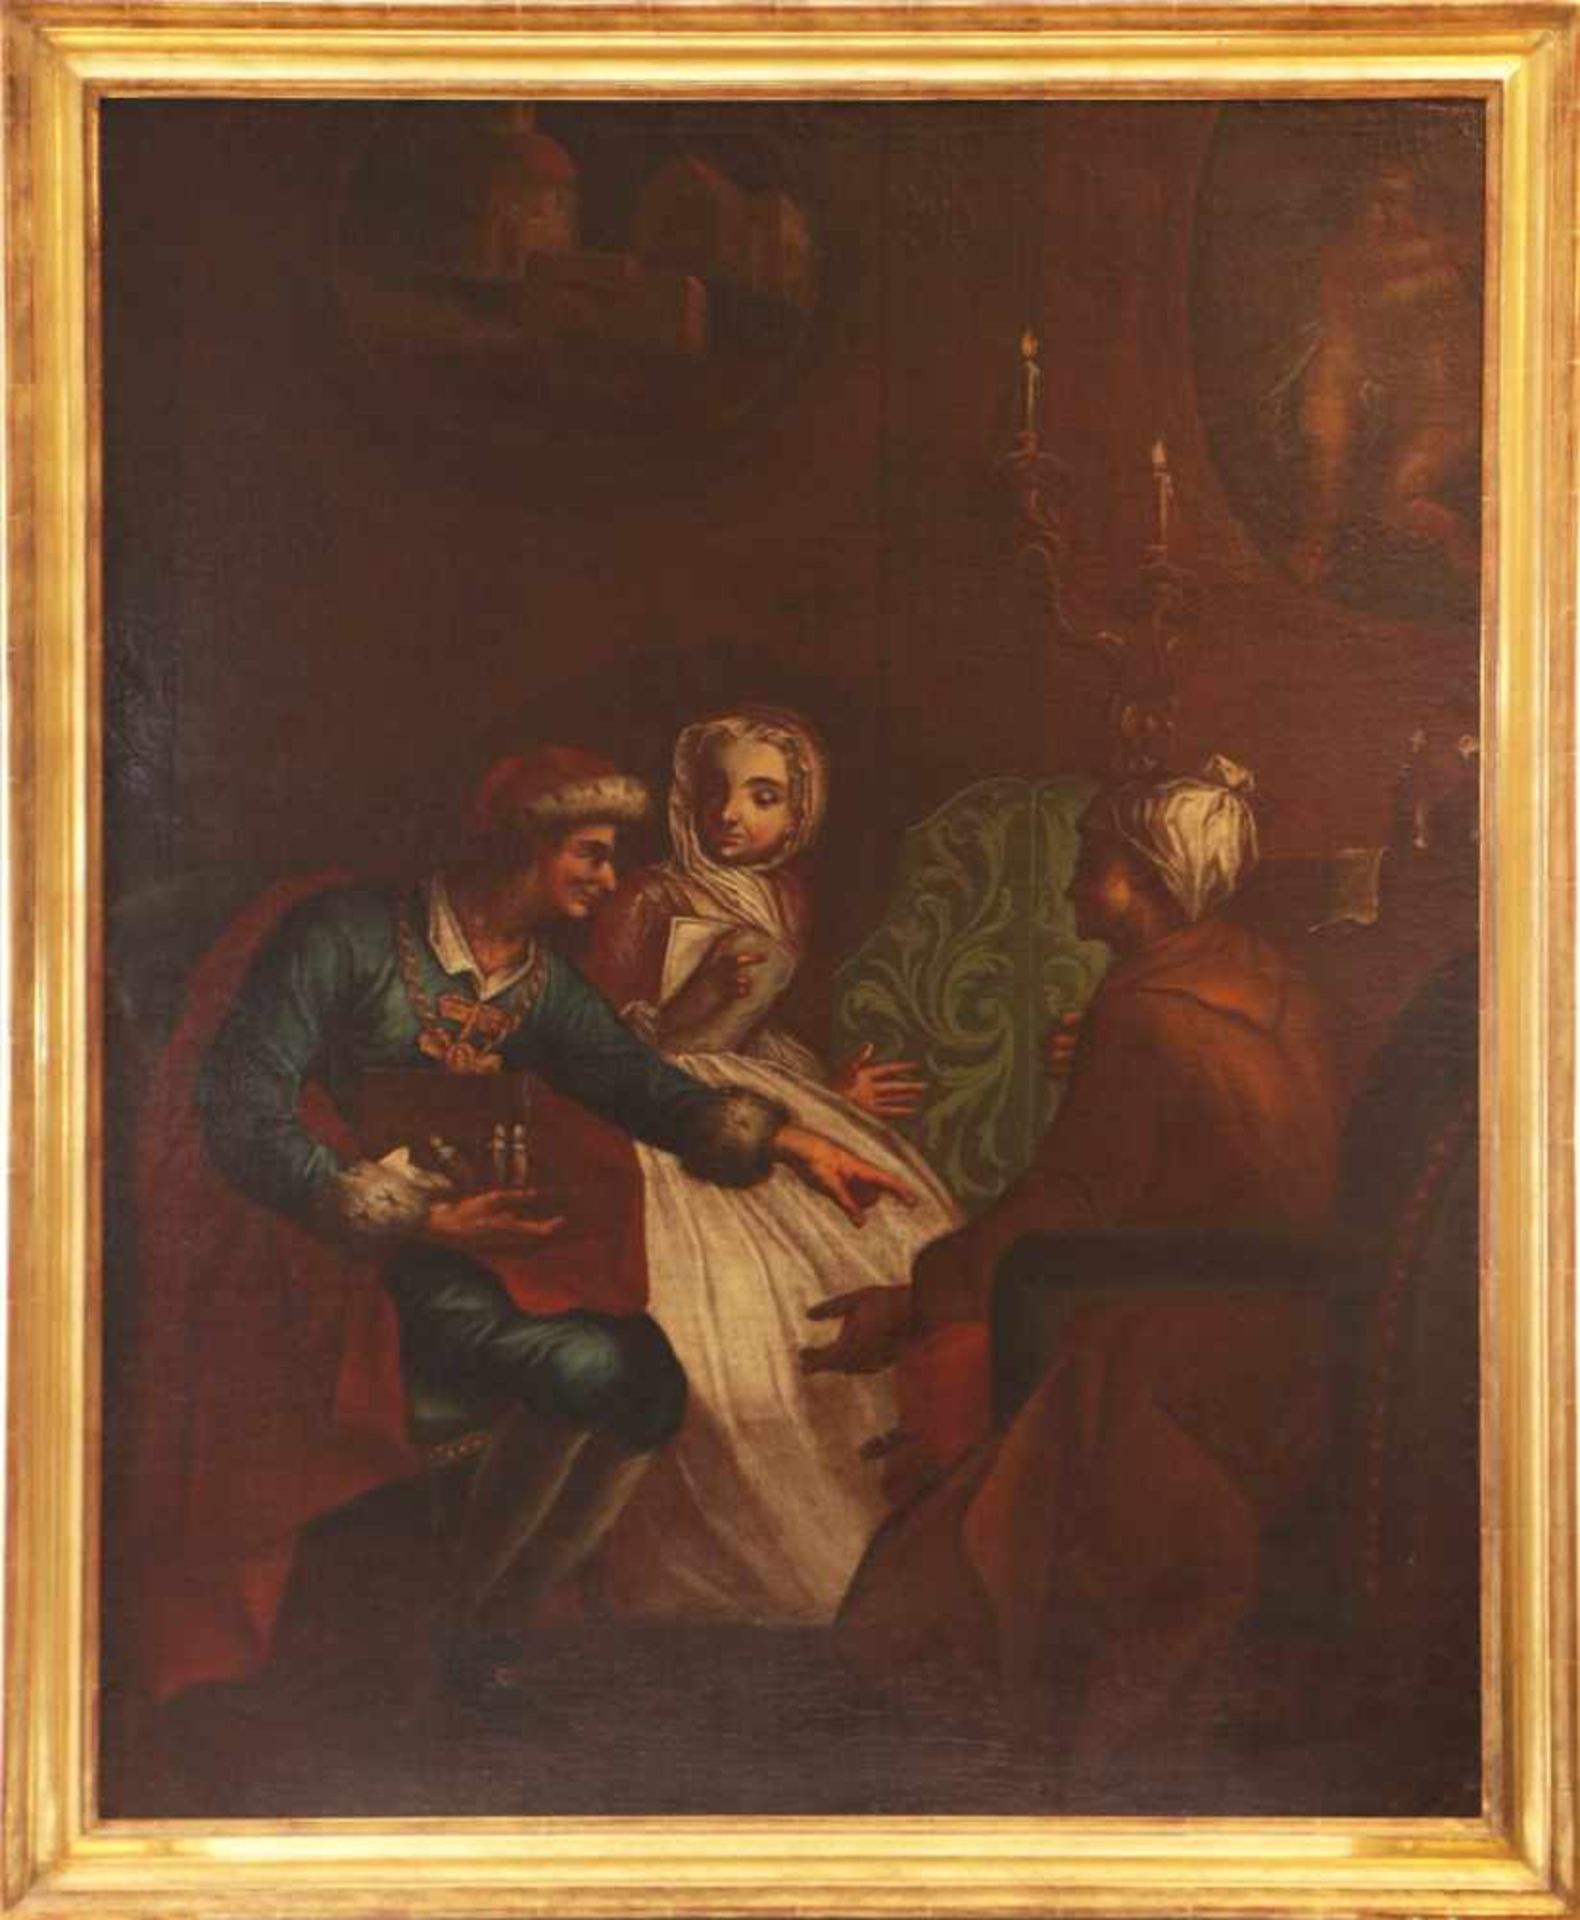 ANONYMER KÜNSTLER des 18. JahrhundertsÖl auf Leinwand, ¨Handelszene¨, 18. Jahrhundert, 103x83 cm,